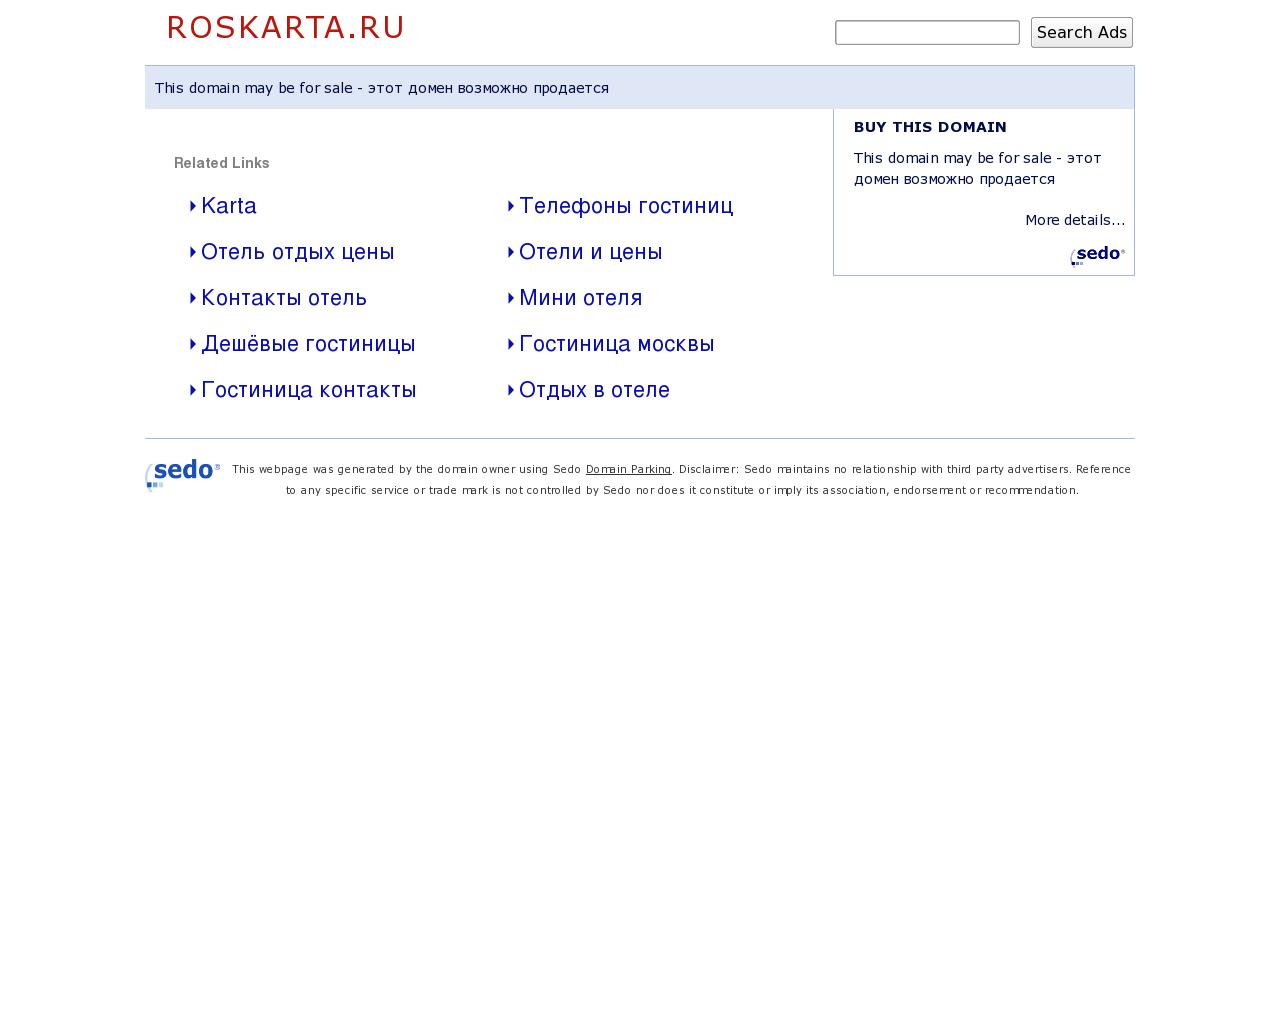 Изображение сайта roskarta.ru в разрешении 1280x1024